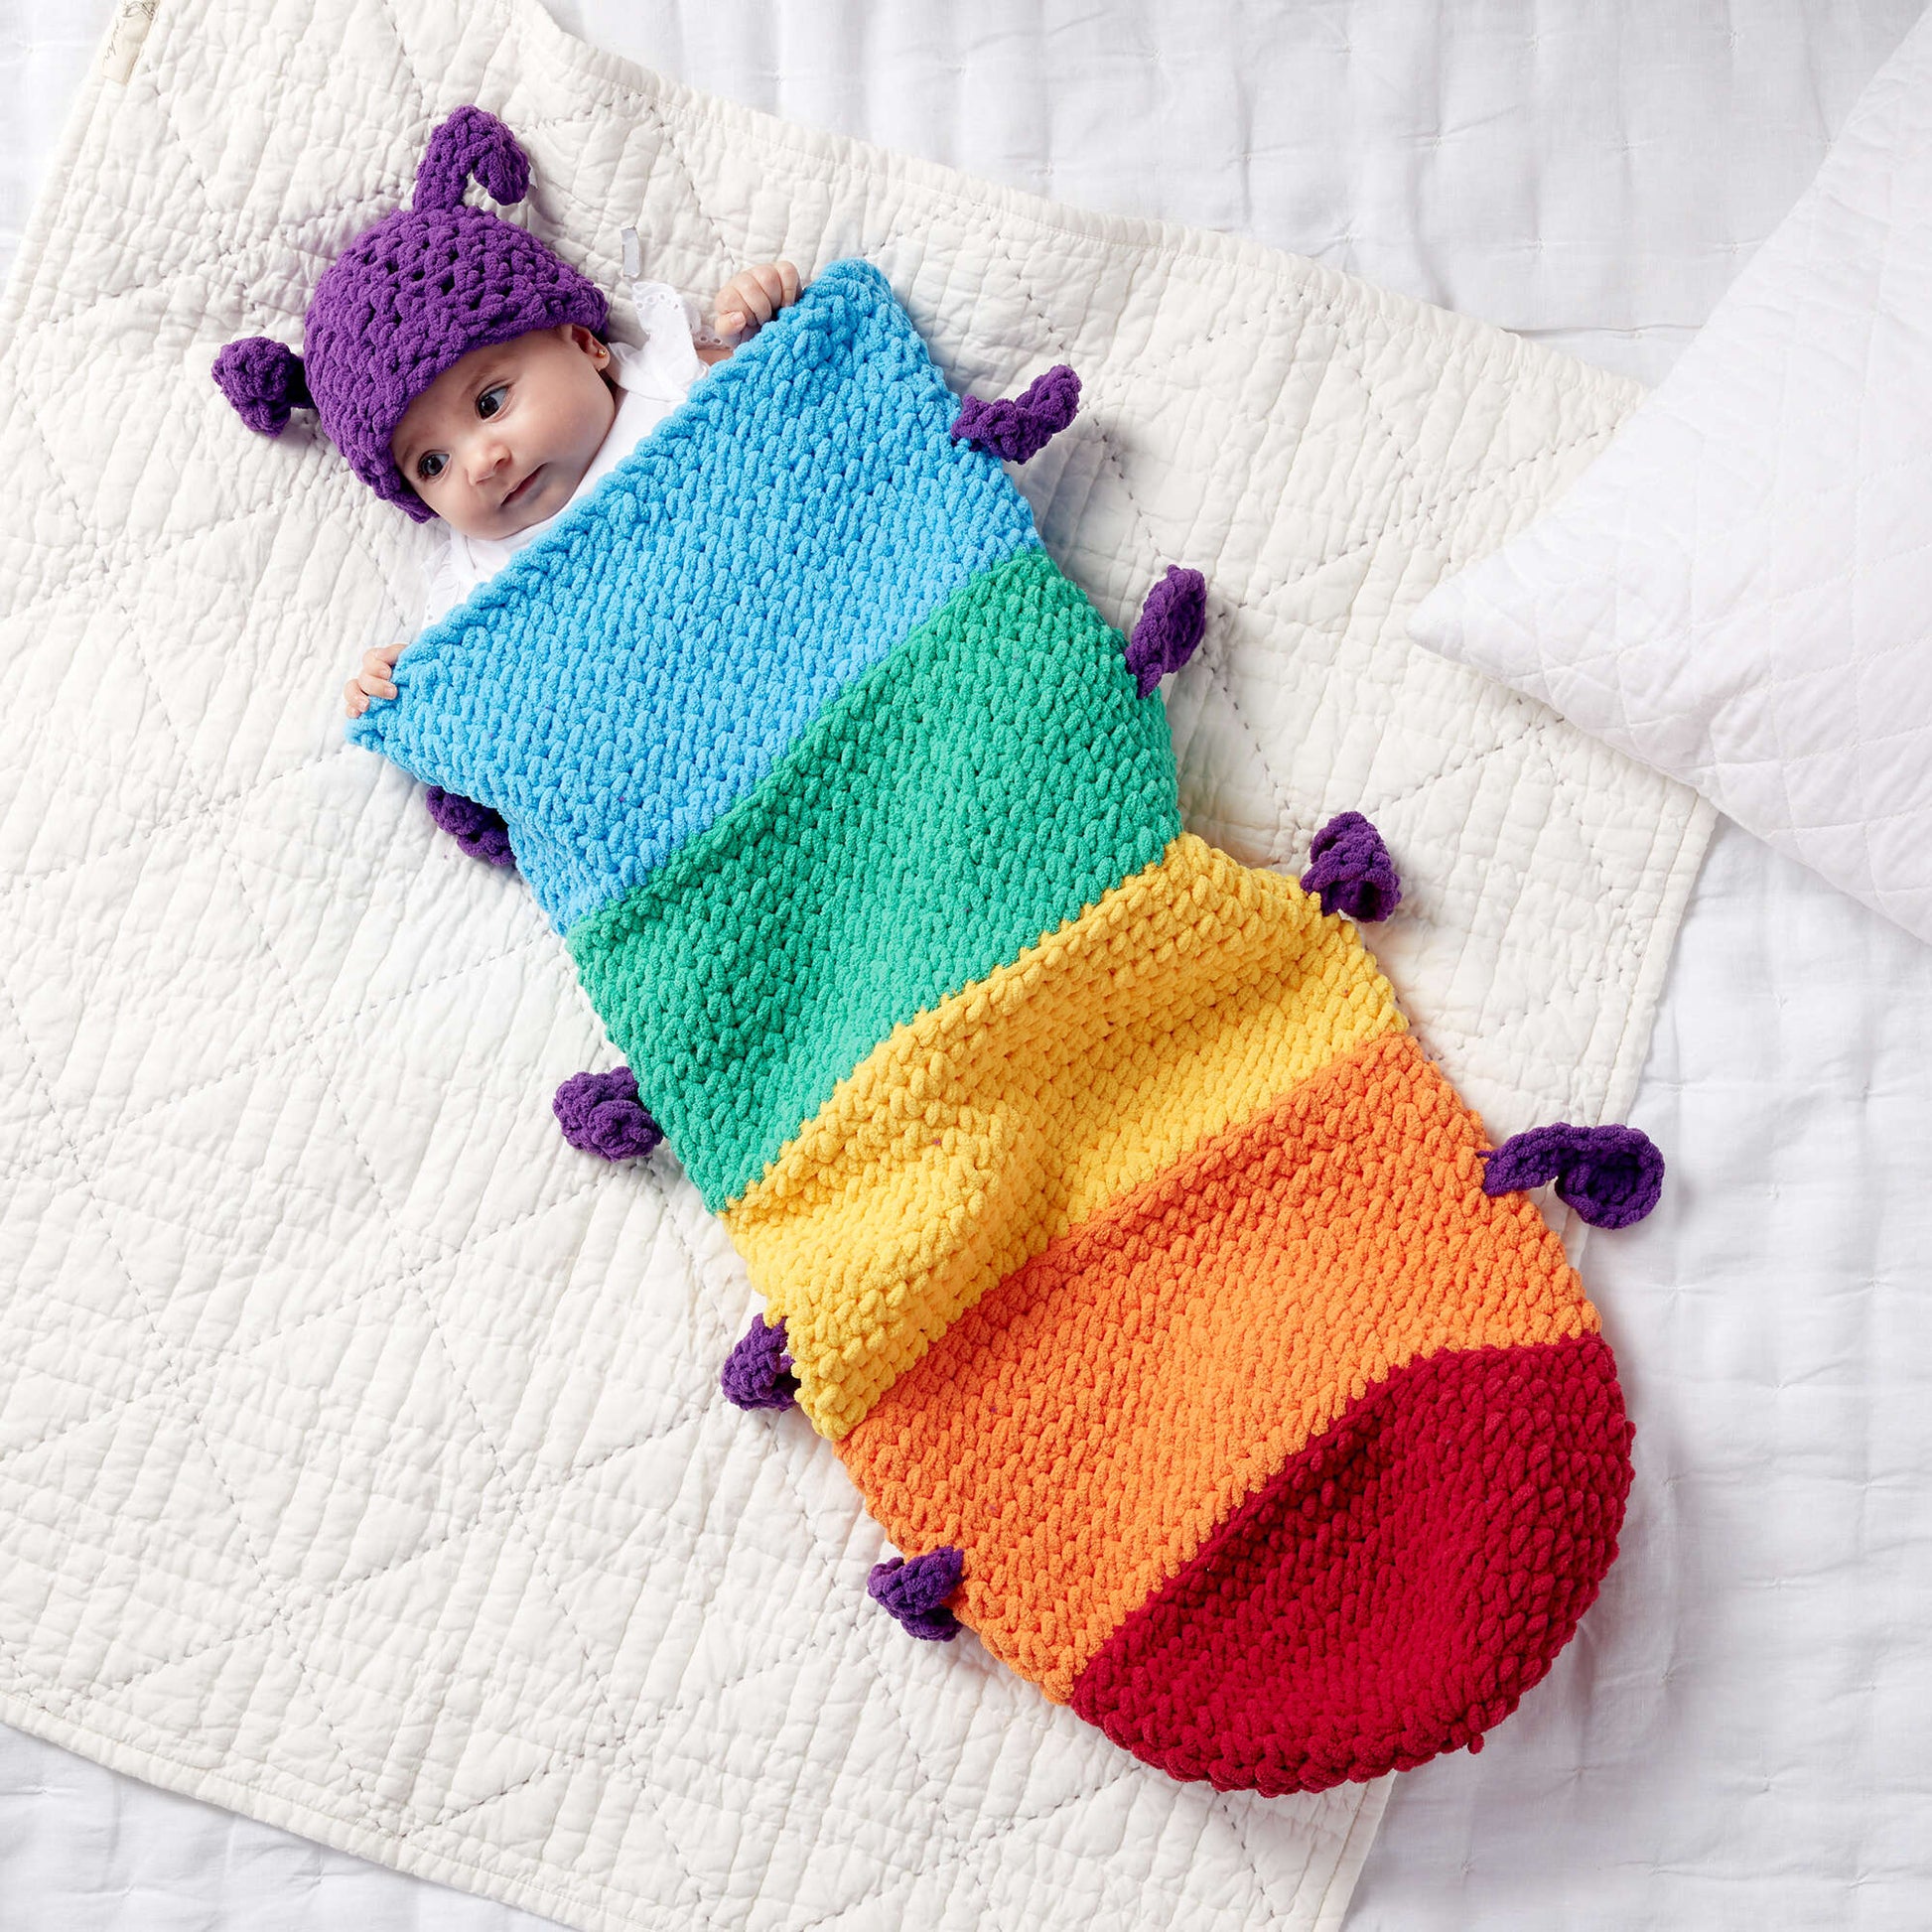 Bernat Caterpillar Crochet Snuggle Sack Crochet Blanket made in Bernat Blanket yarn